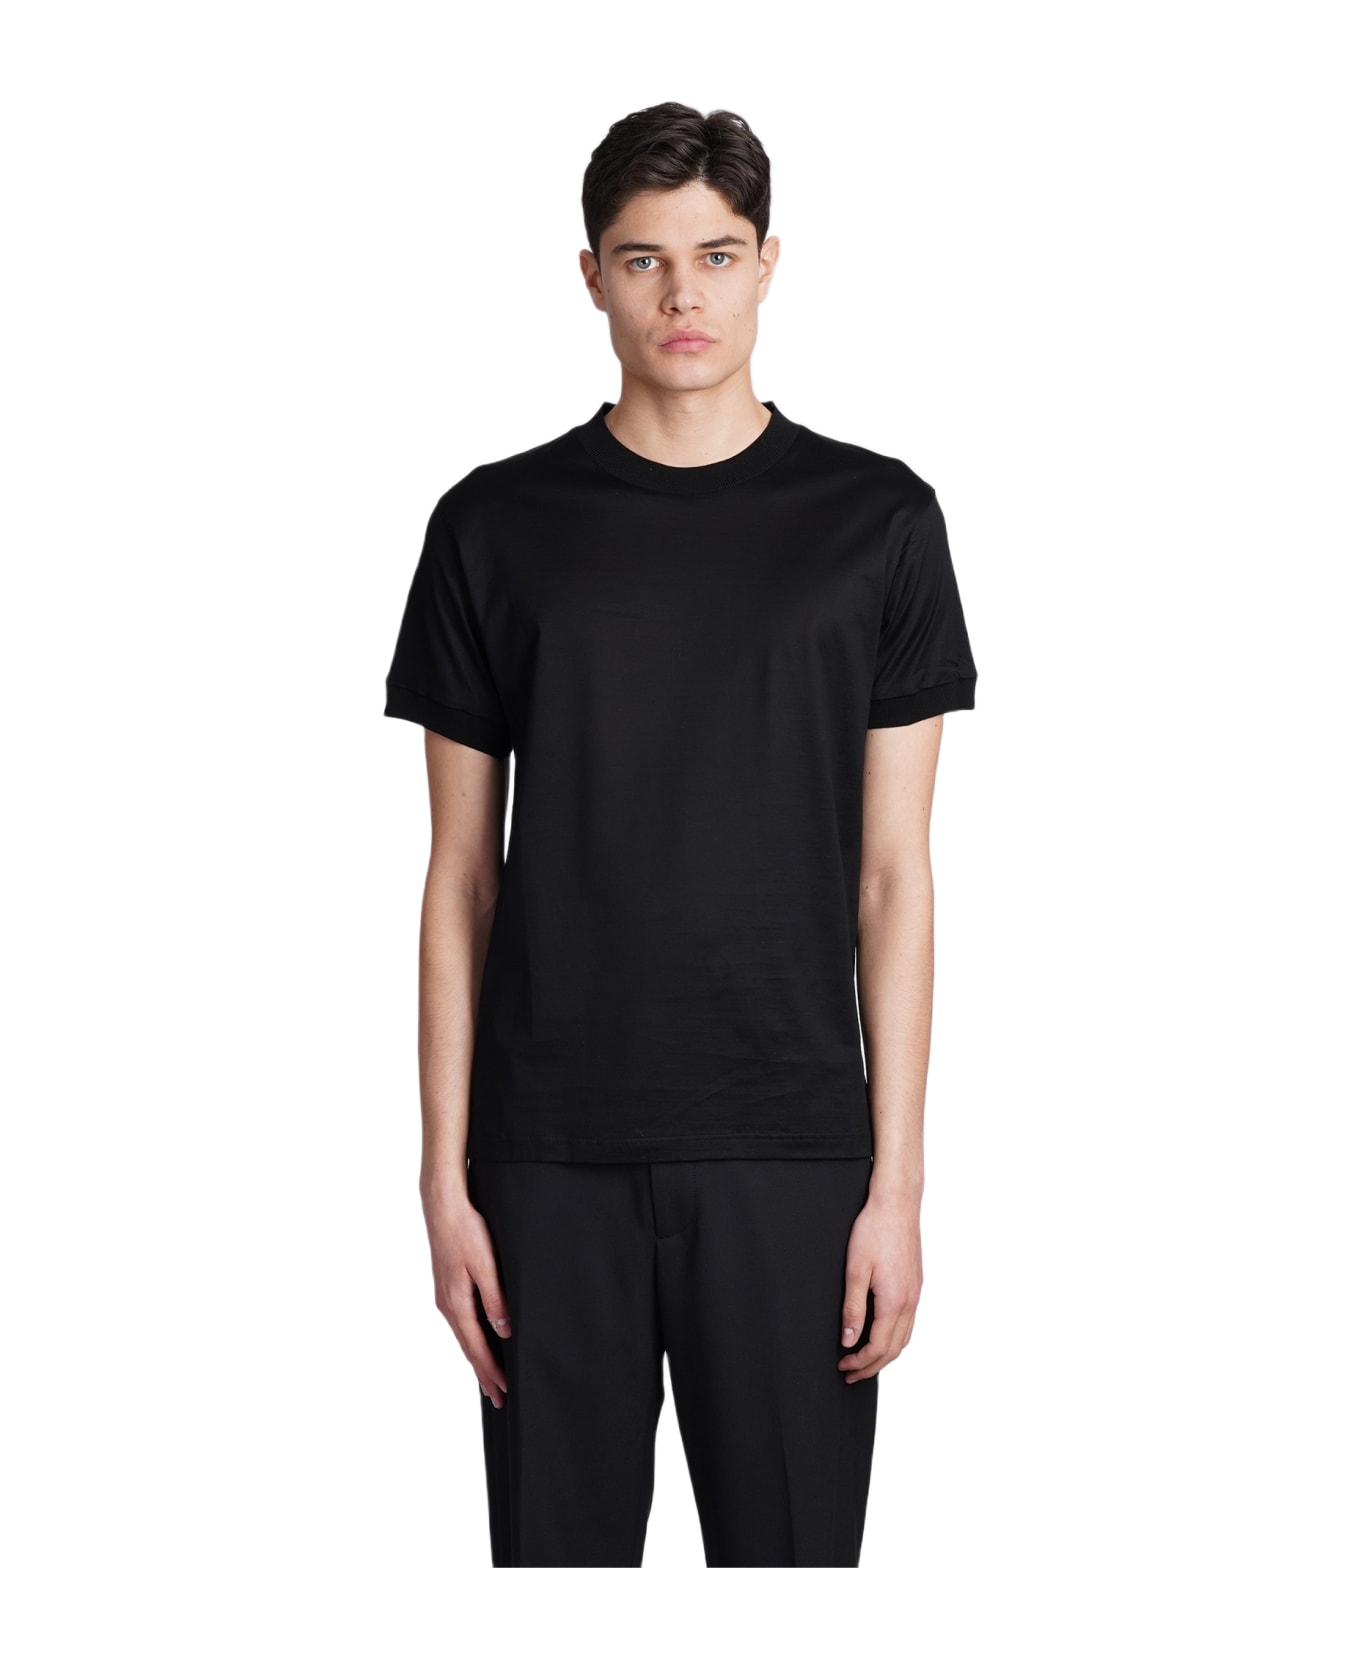 Tagliatore 0205 Keys T-shirt In Black Cotton - black シャツ